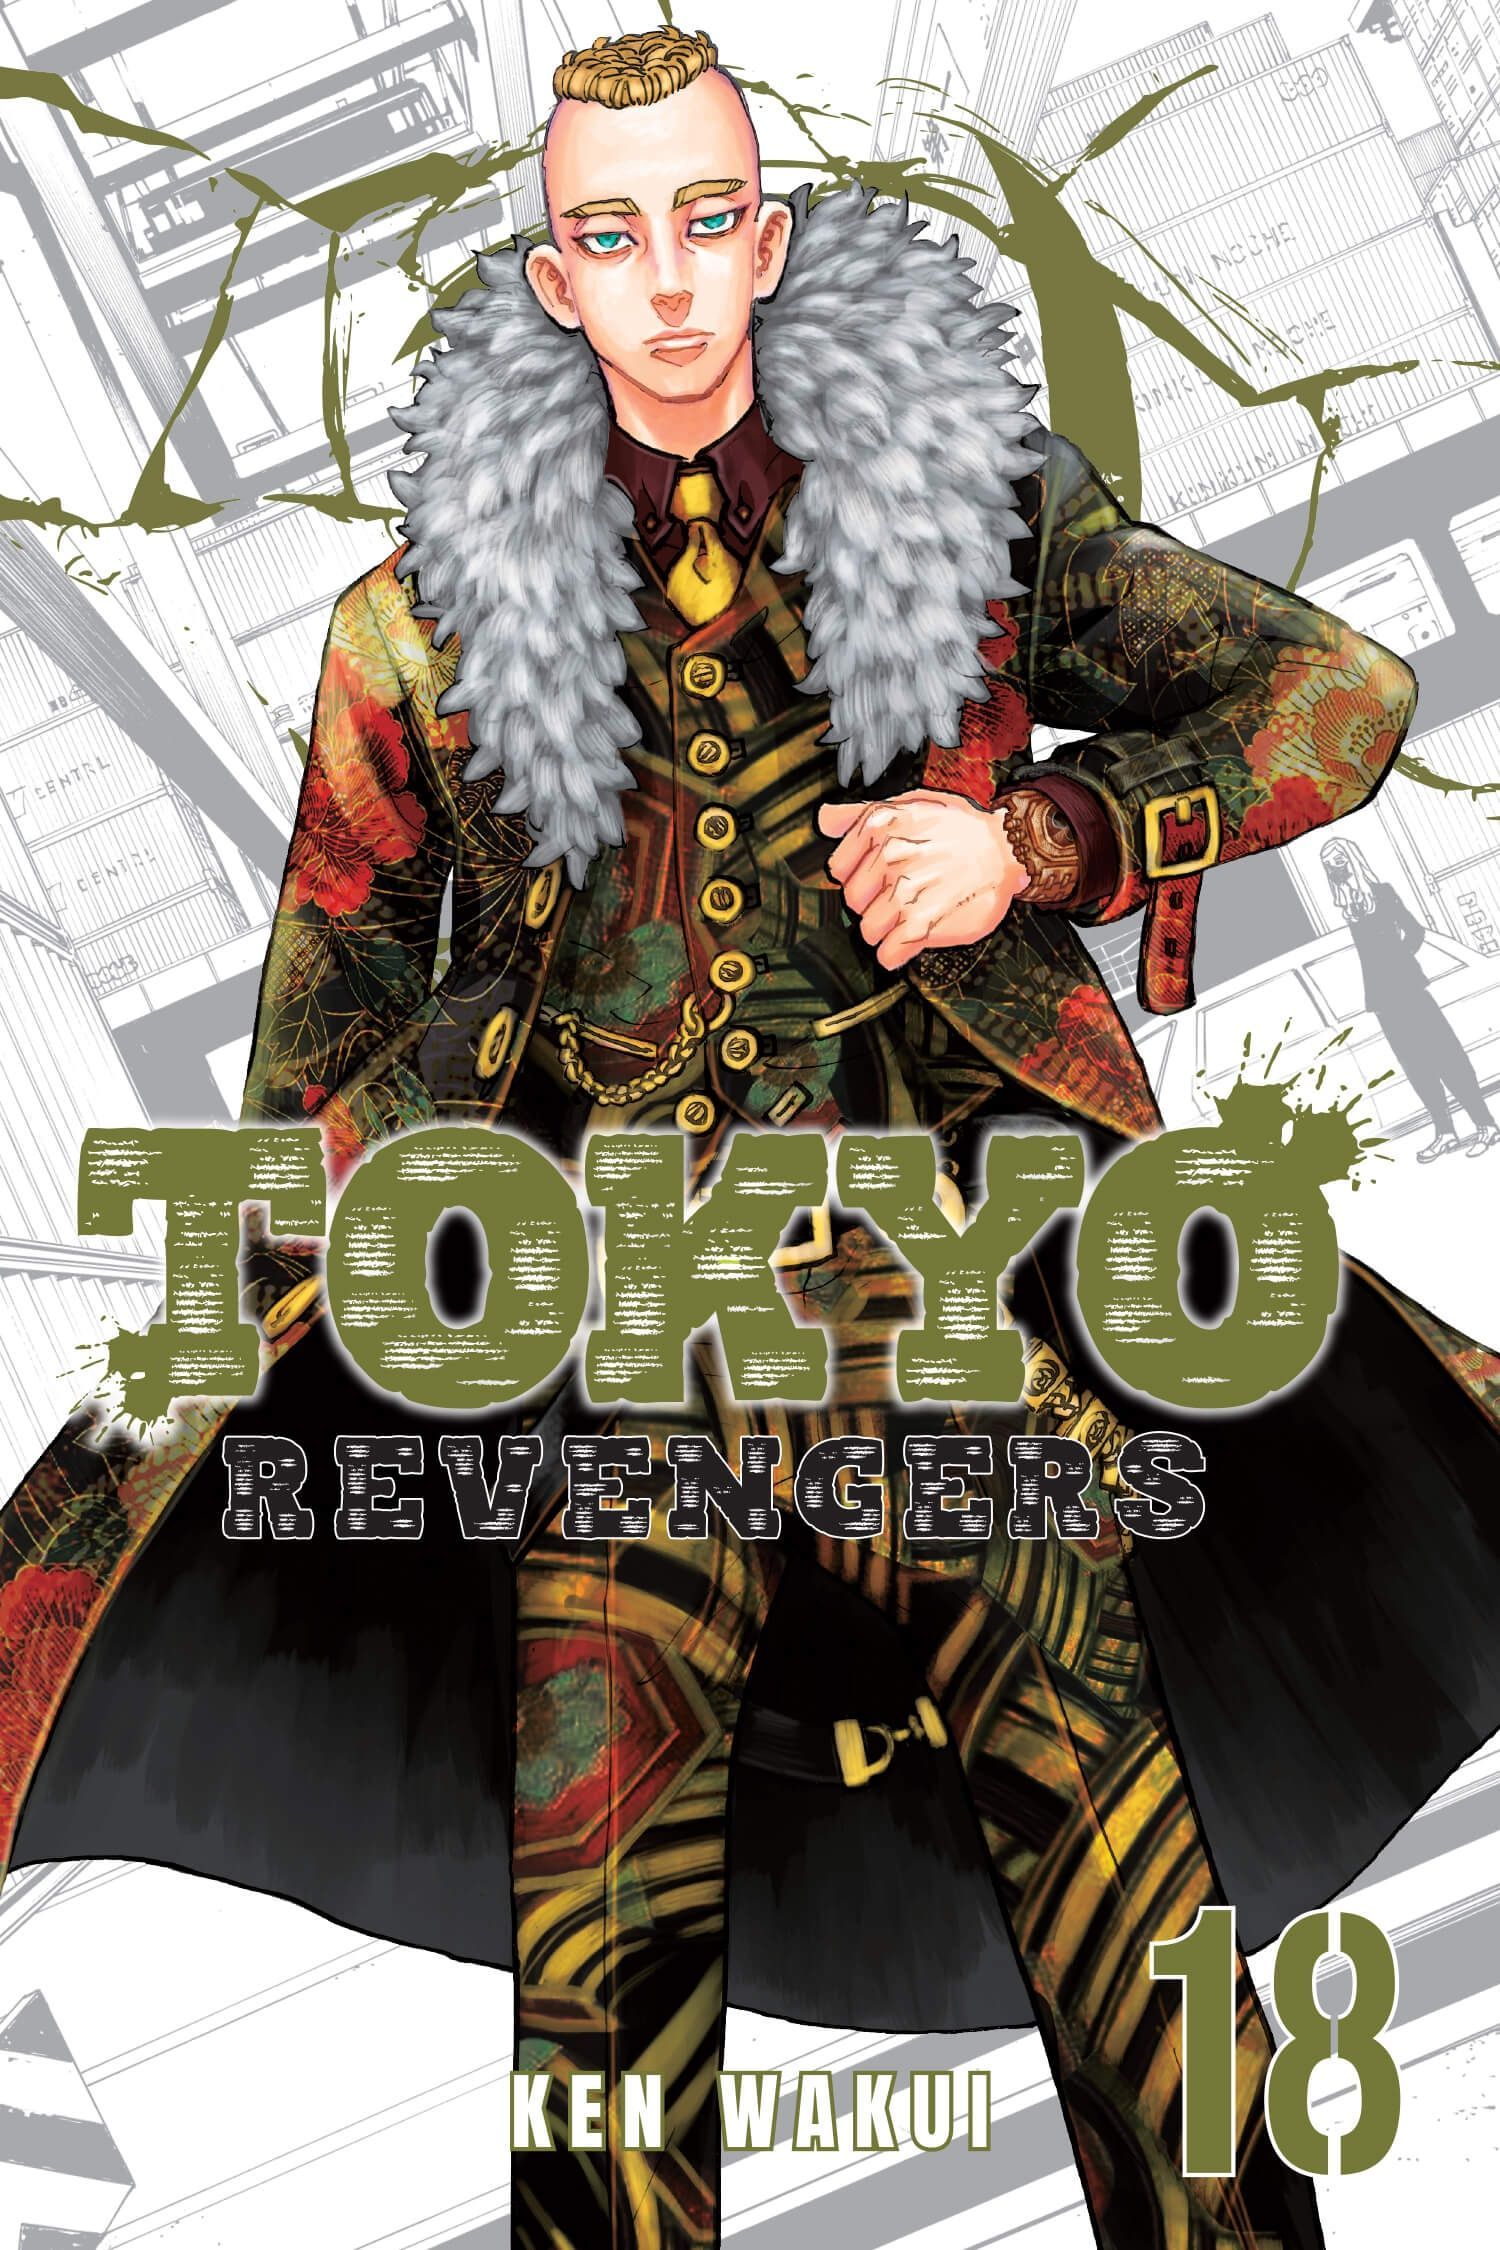 Wallpaper Tokyo Revengers Manga em 2021. Anime, Mangas, Roupas artísticas